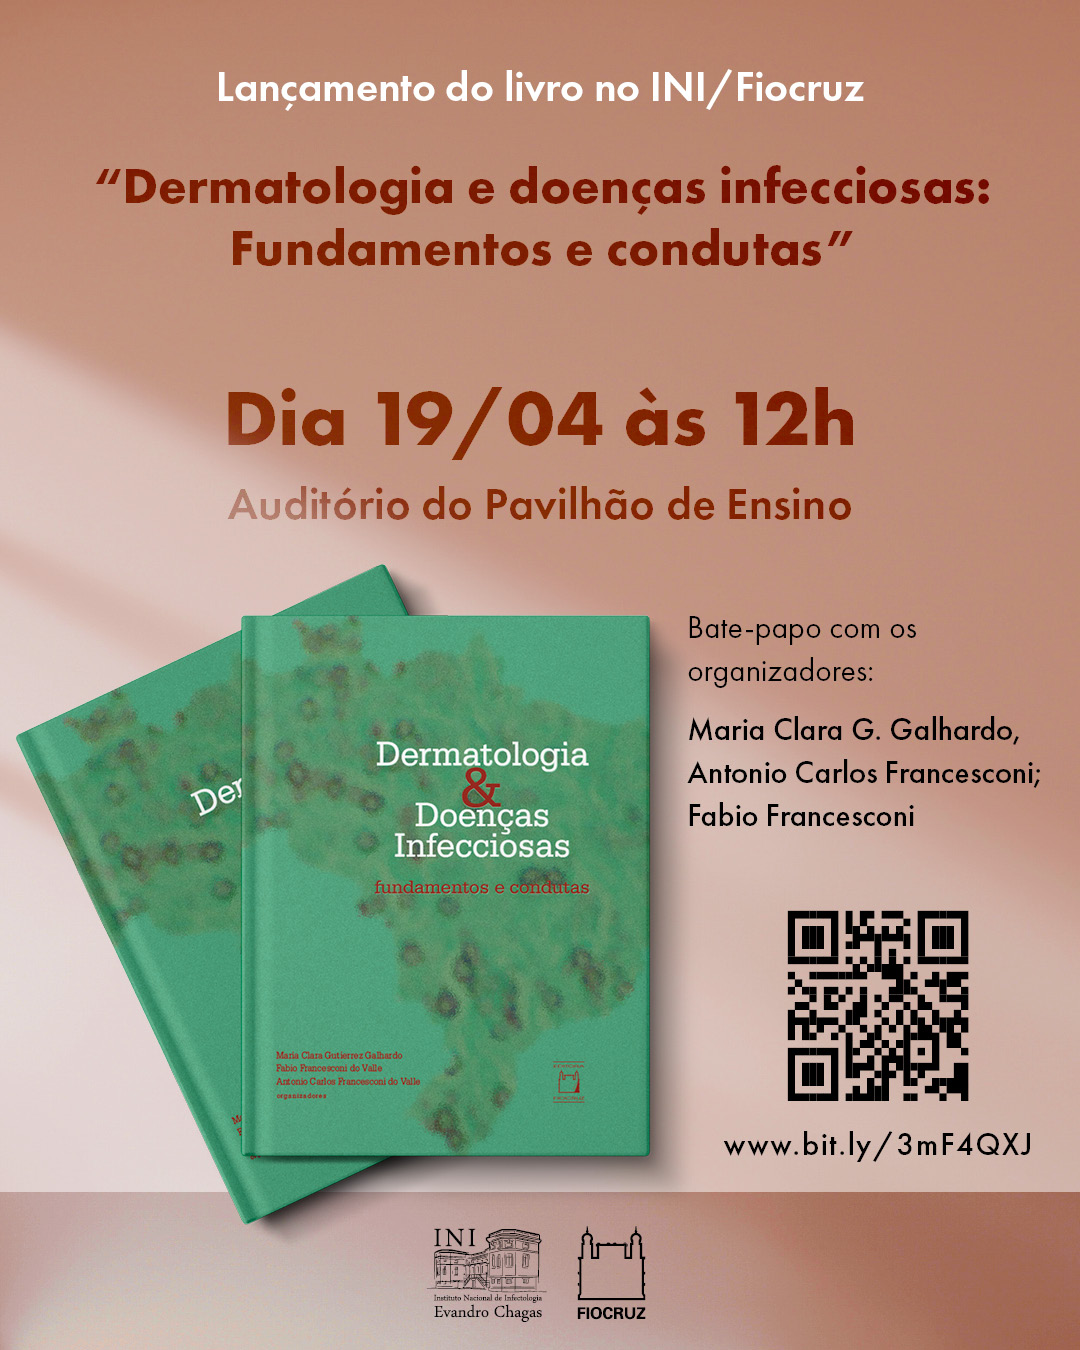 Selo com o título do livro: Dermatologia  Dermatologia e doenças infecciosas: Fundamentos e condutas